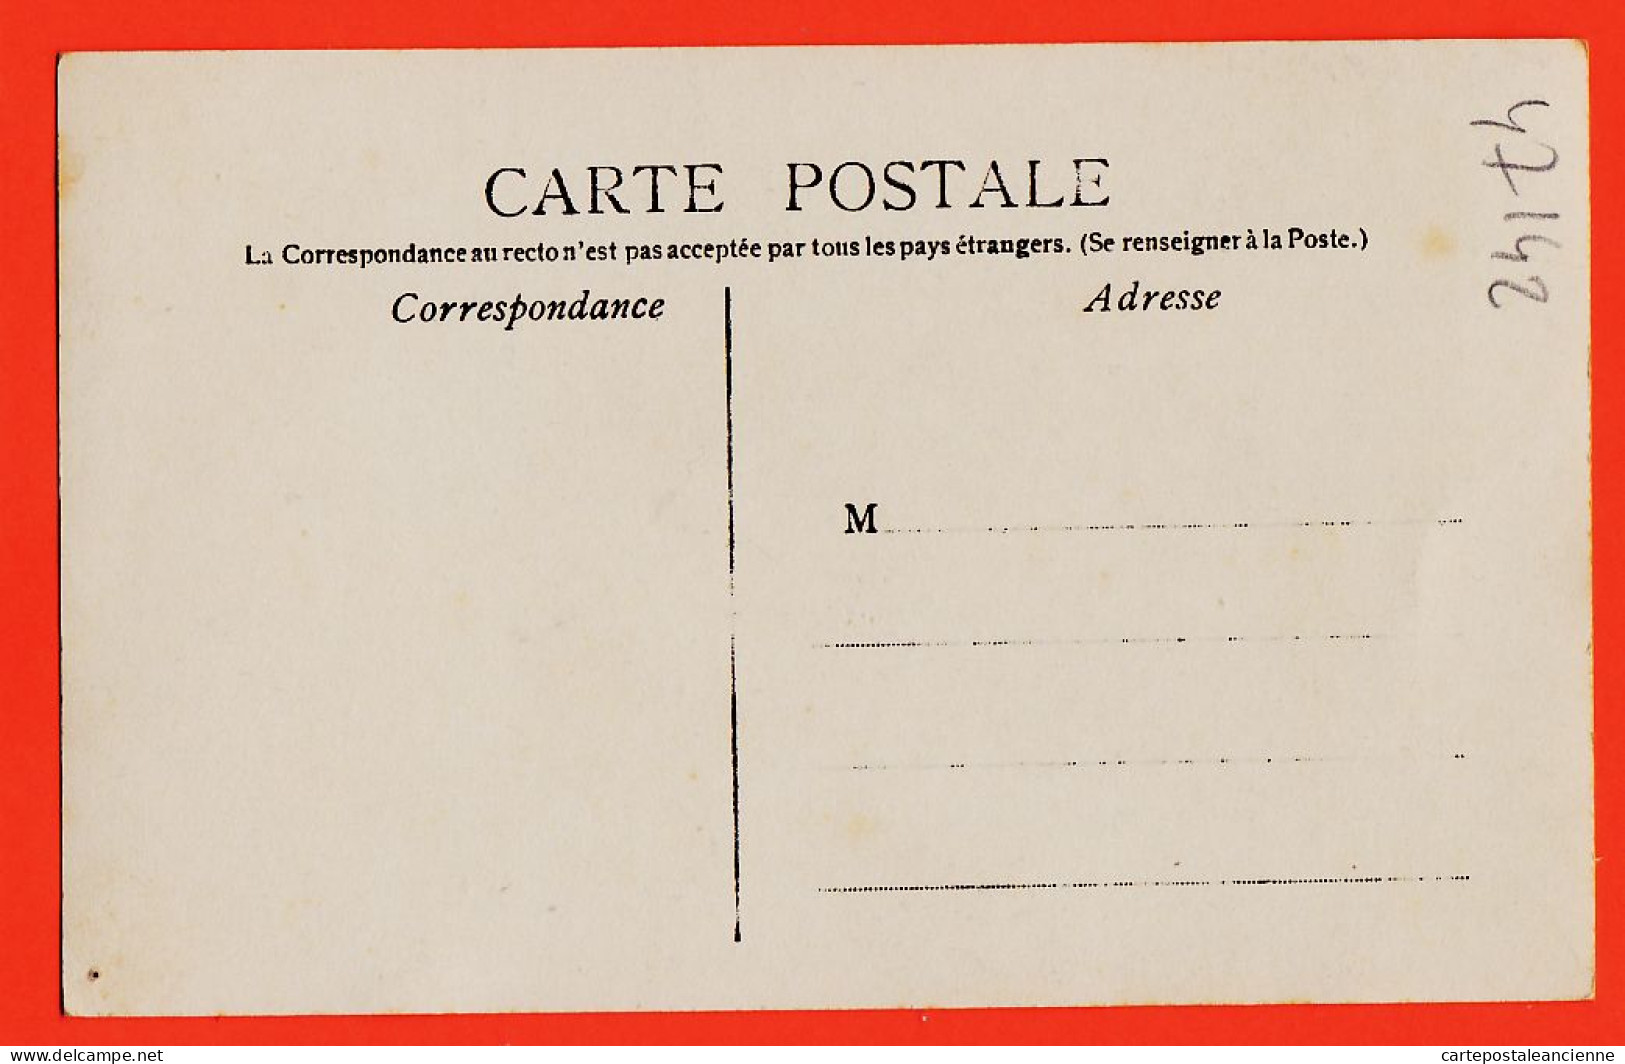 05467 / Carte-Photo  Troupeau De Vaches Et Son Veau Broutant Paturage Cpagr 1900s  - Viehzucht